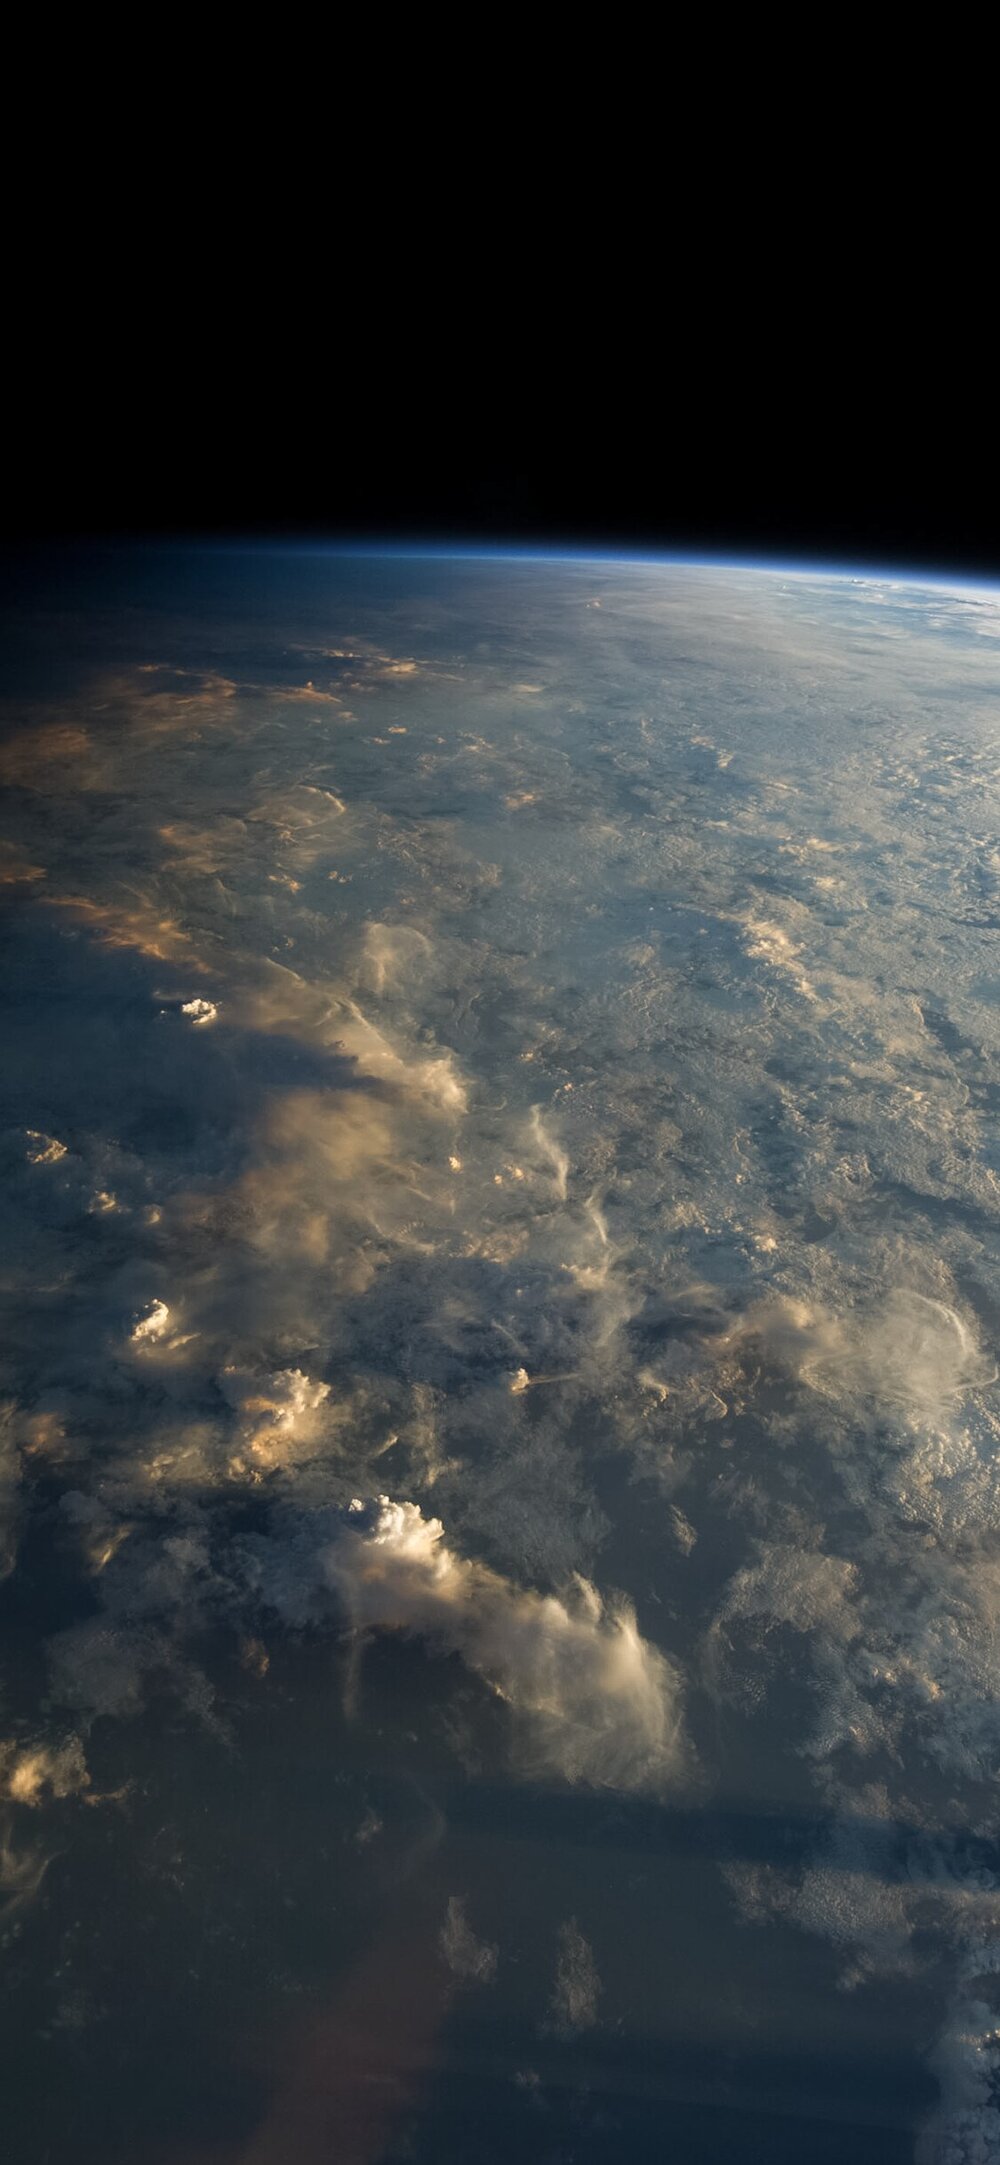 Chiêm ngưỡng vẻ đẹp và sự kỳ diệu của Trạm vũ trụ quốc tế ISS, một trong những kỳ quan kỹ thuật hàng đầu của thế giới. Nhấp vào hình ảnh để đắm chìm trong không gian thật sự. 